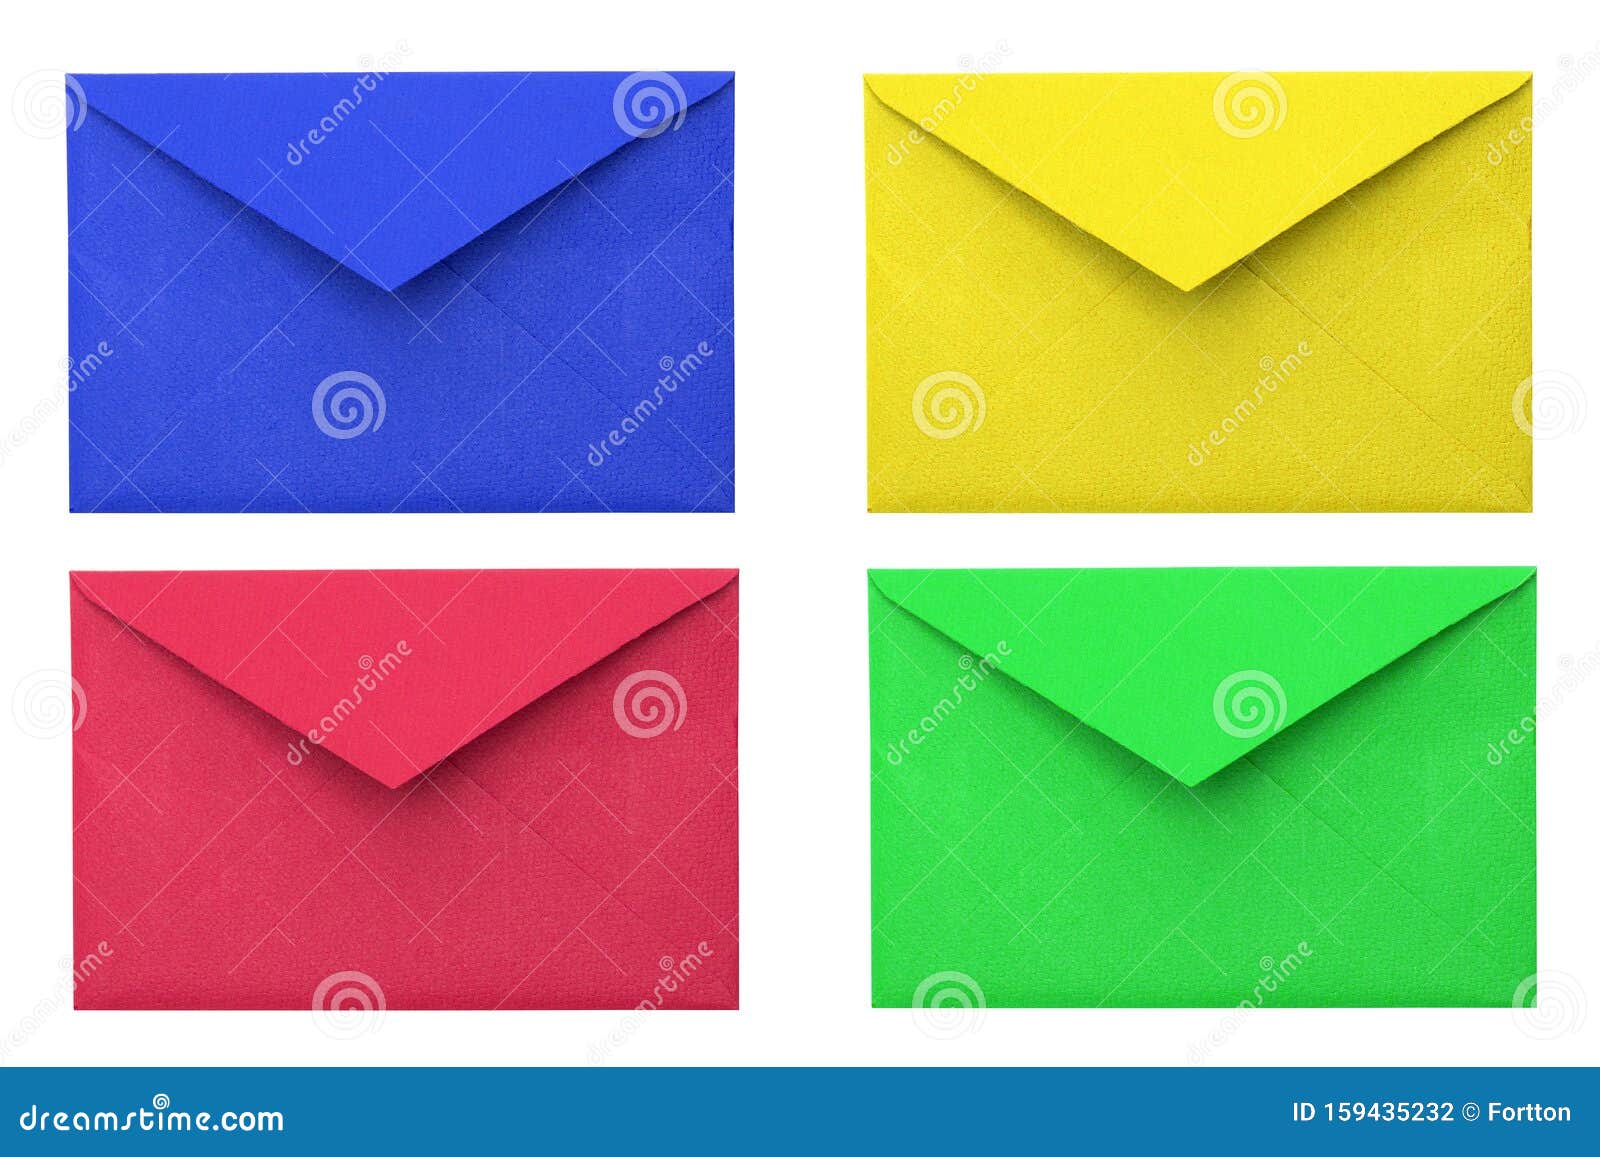 https://thumbs.dreamstime.com/z/quattro-buste-busta-blu-rossa-gialla-verde-colorate-su-fondo-bianco-di-carta-gruppo-oggetto-decorazione-simbolo-messaggio-lettera-159435232.jpg